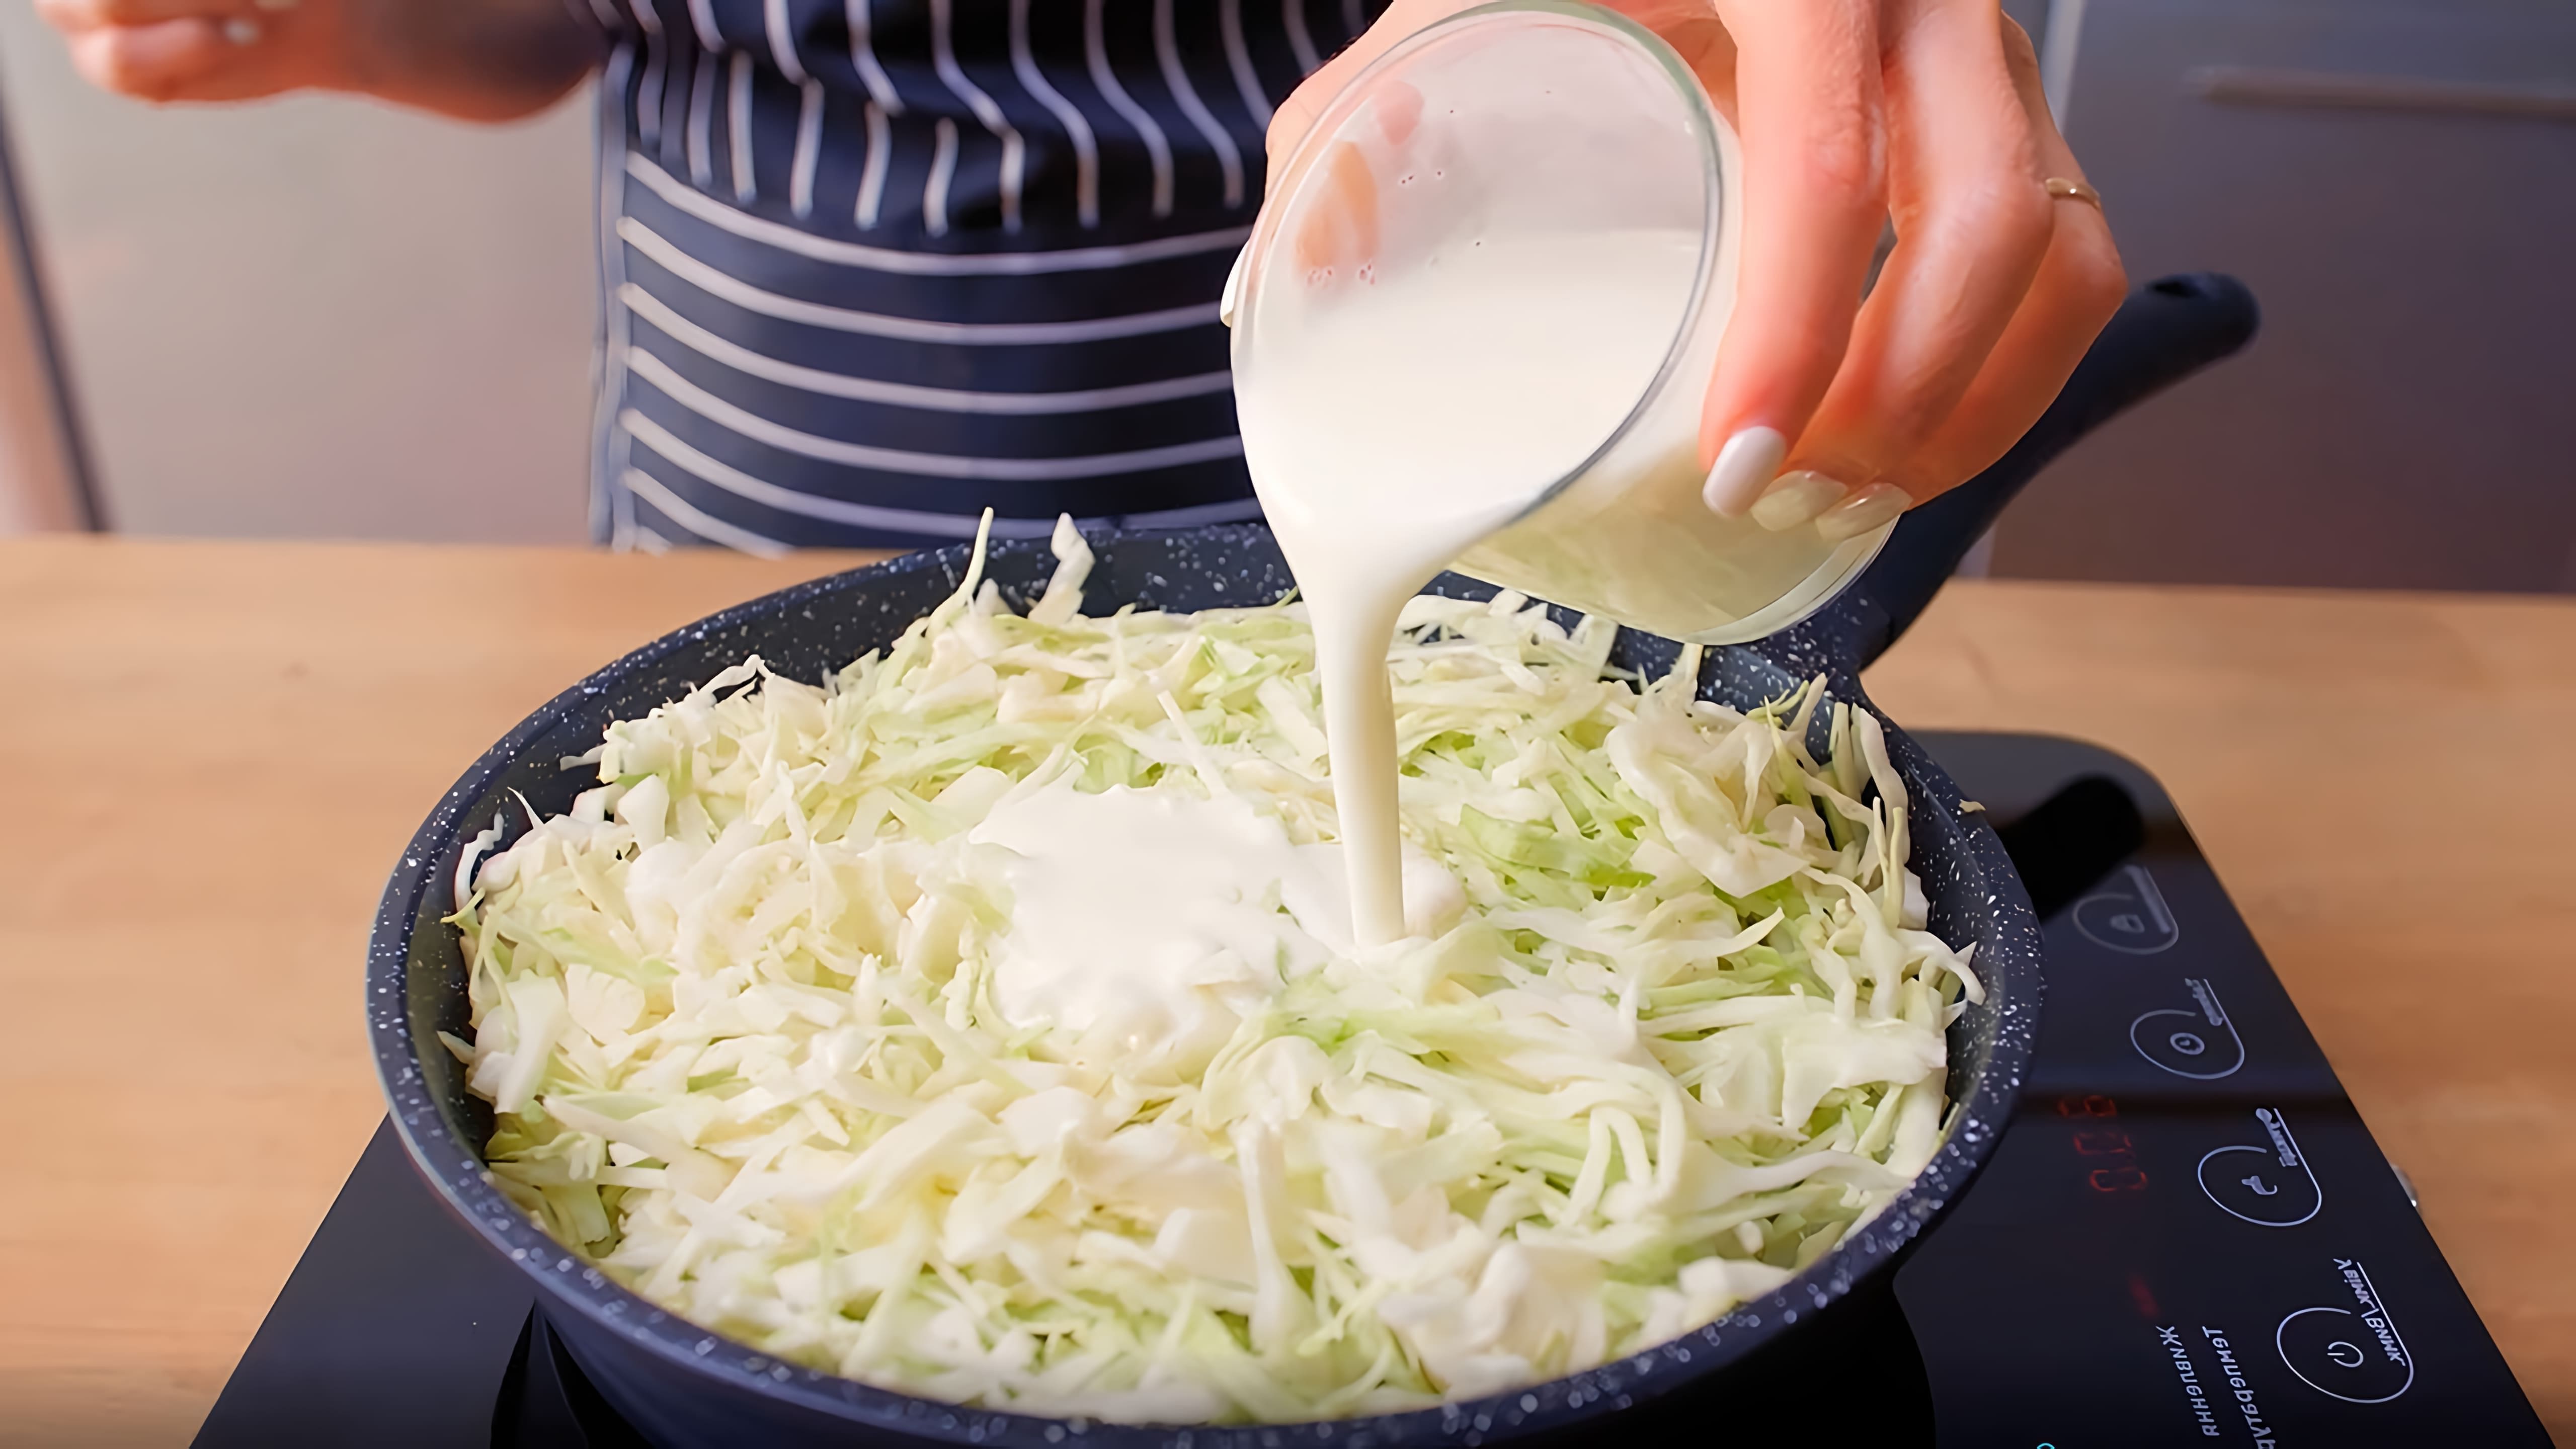 В этом видео демонстрируется рецепт приготовления капусты с кефиром и специями